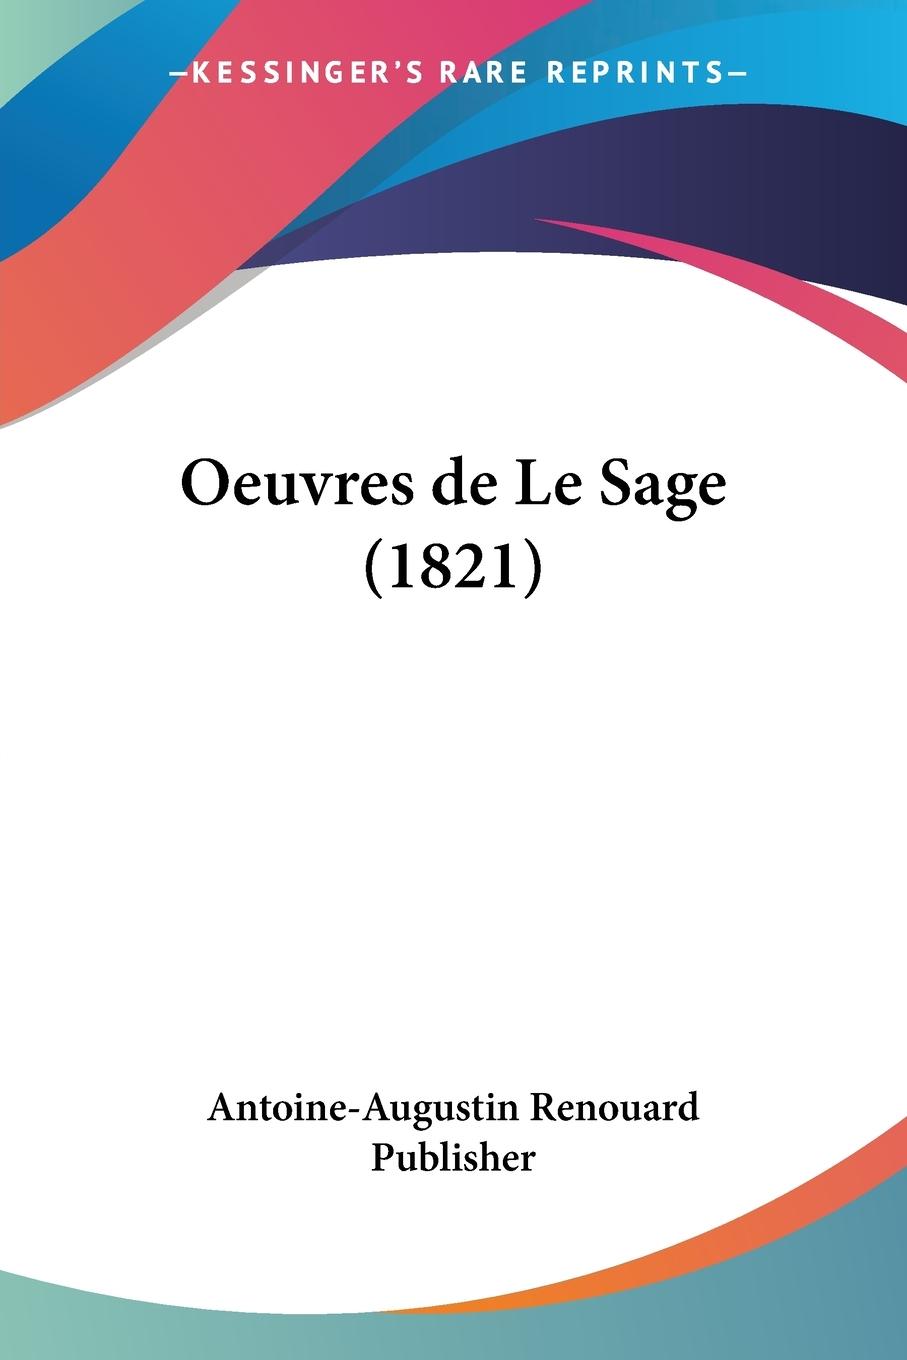 Oeuvres de Le Sage (1821) - Antoine-Augustin Renouard Publisher